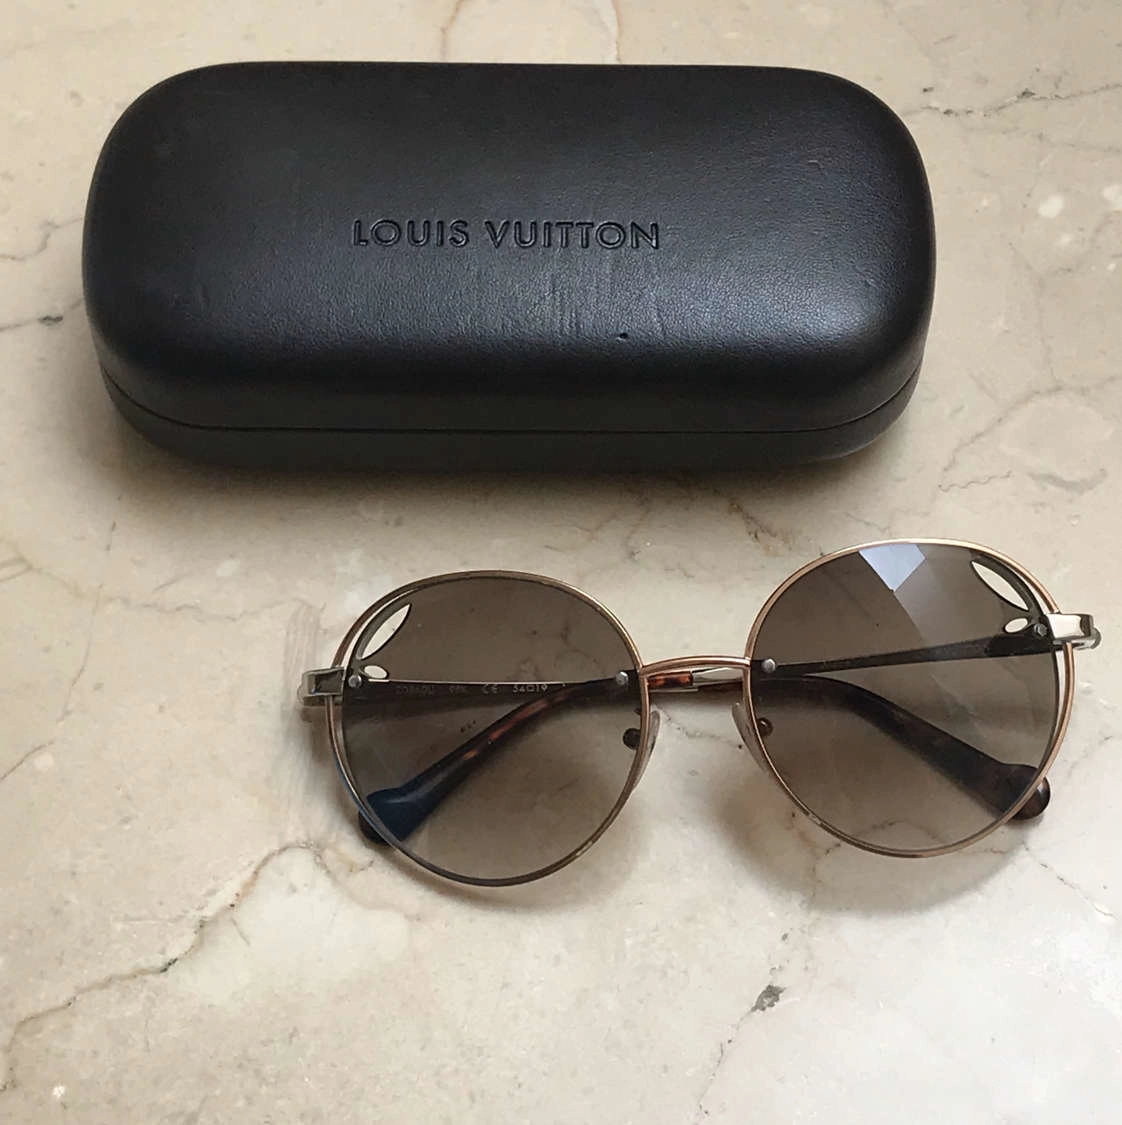 😍✨ Lentes de sol Louis Vuitton de nuestra #NuevaColeccion ¡Los